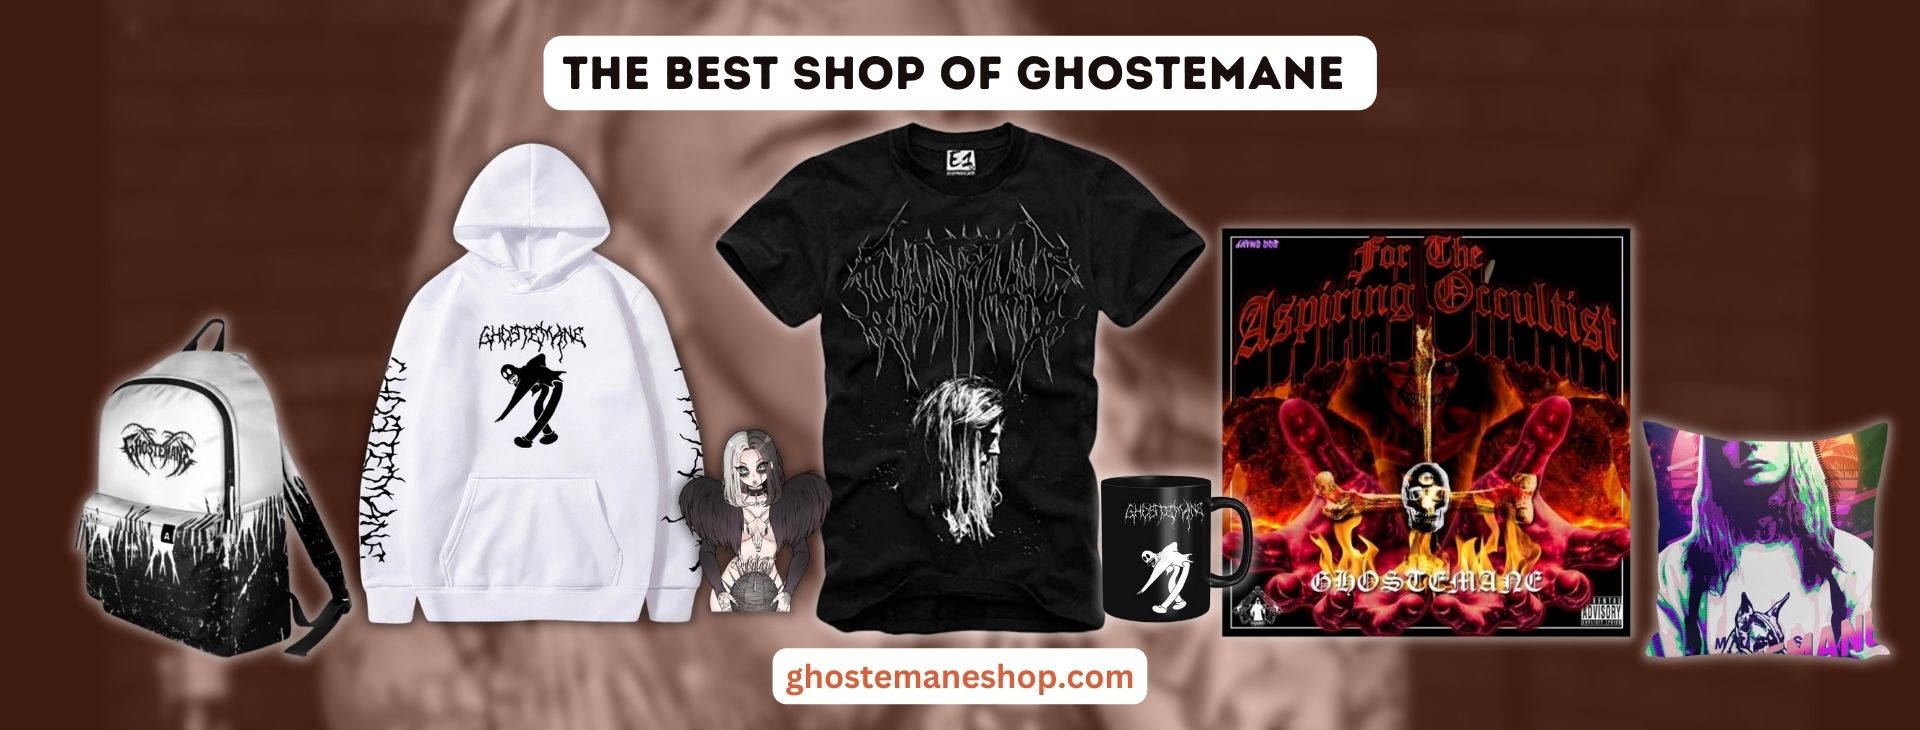 ghostemane Banner - Ghostemane Shop